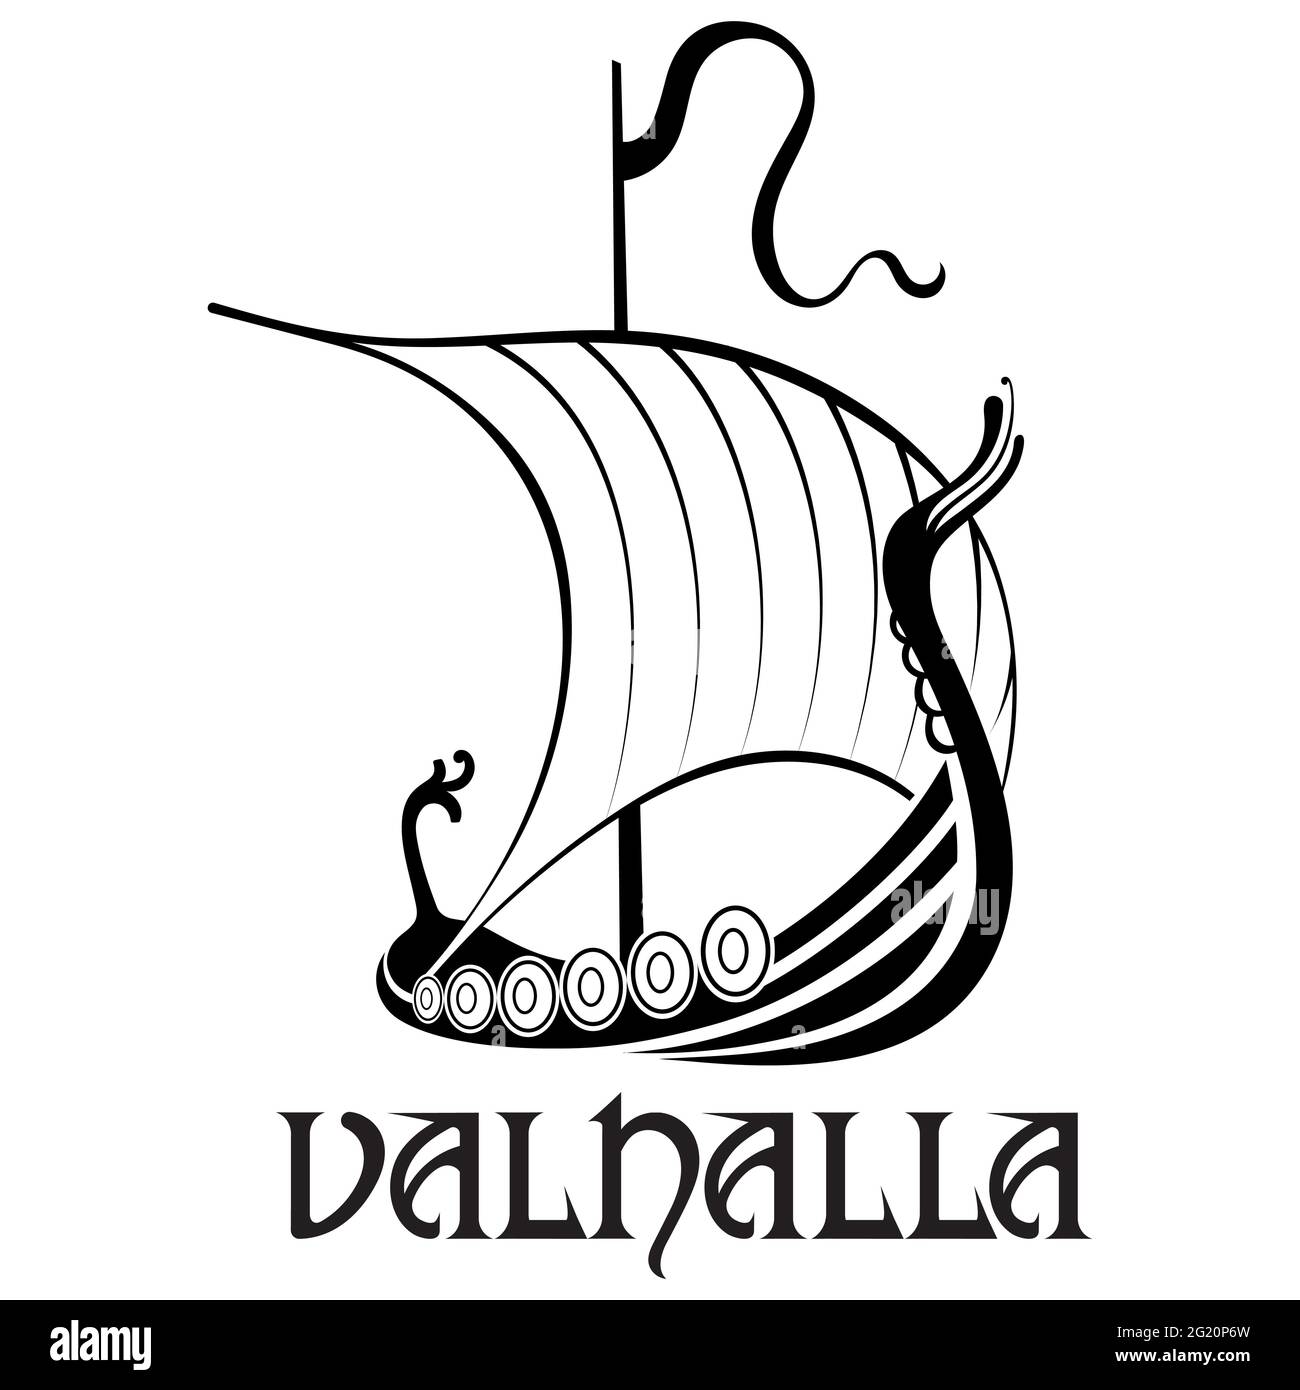 Viking, skandinavisches Design. Drakkar mit einem Drachenkopf und der Inschrift Valhalla, isoliert auf weiß, Vektorgrafik Stock Vektor